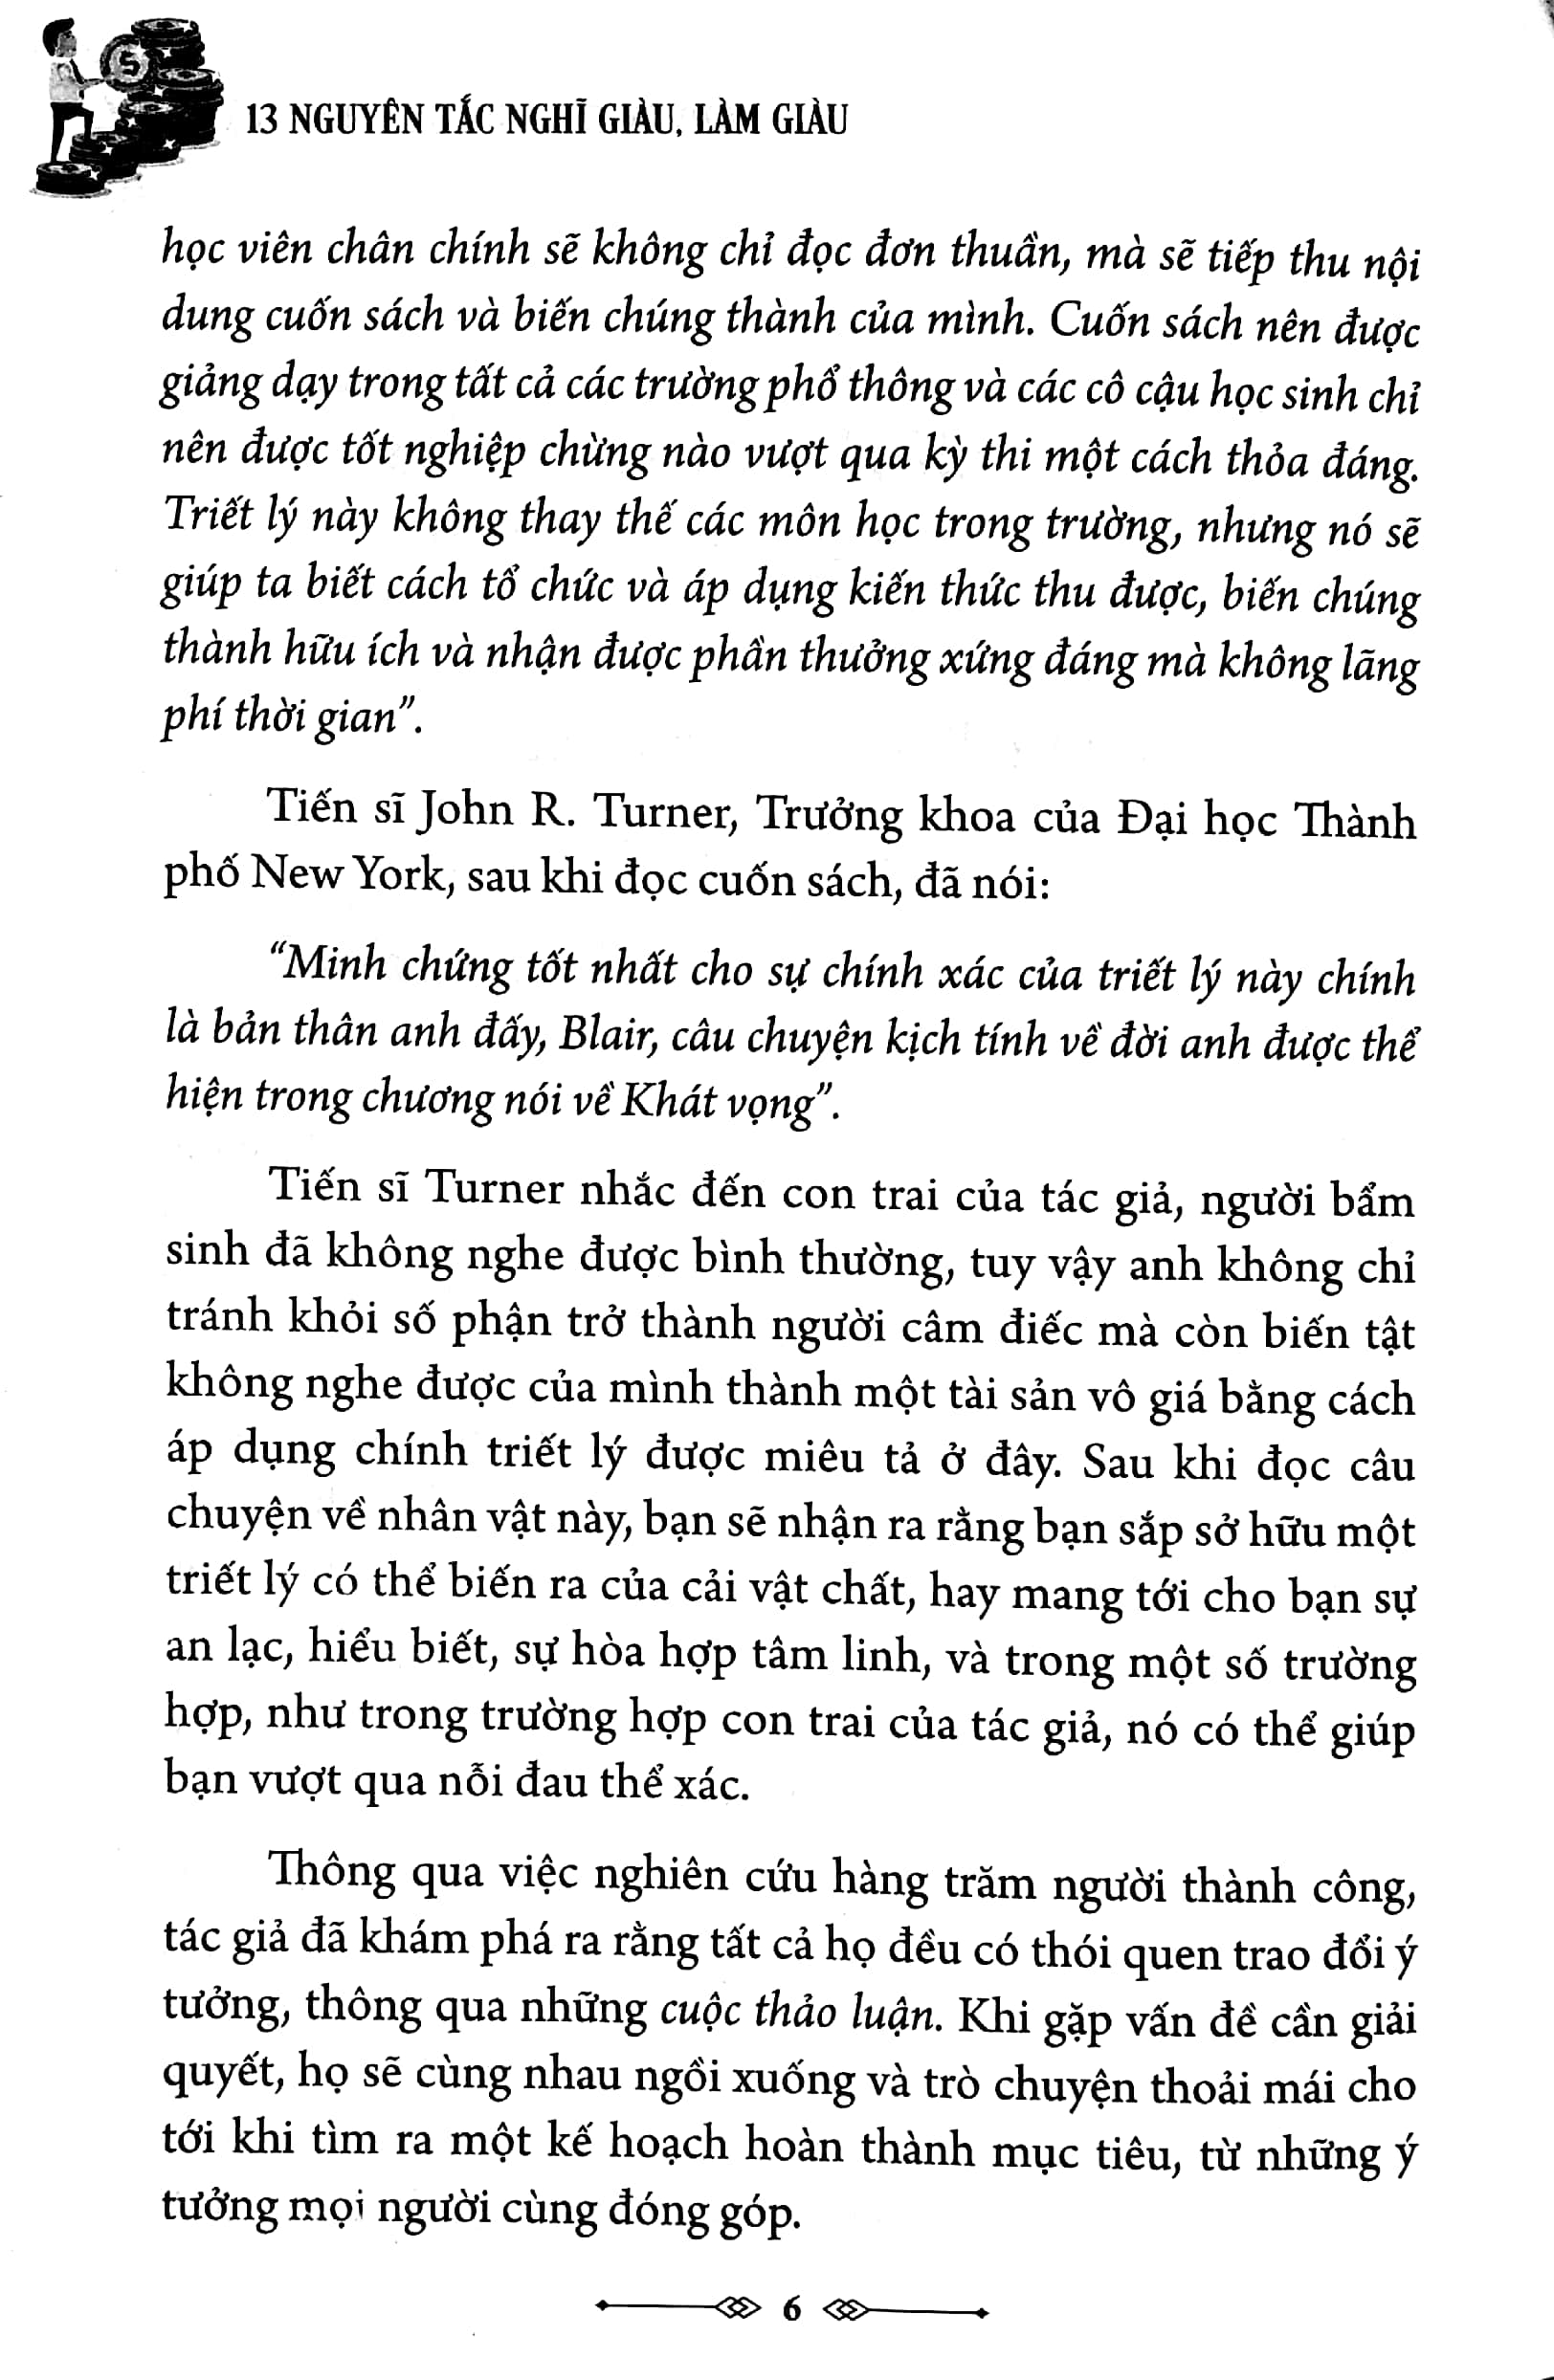 Think And Grow Rich - 13 Nguyên Tắc Nghĩ Giàu, Làm Giàu PDF